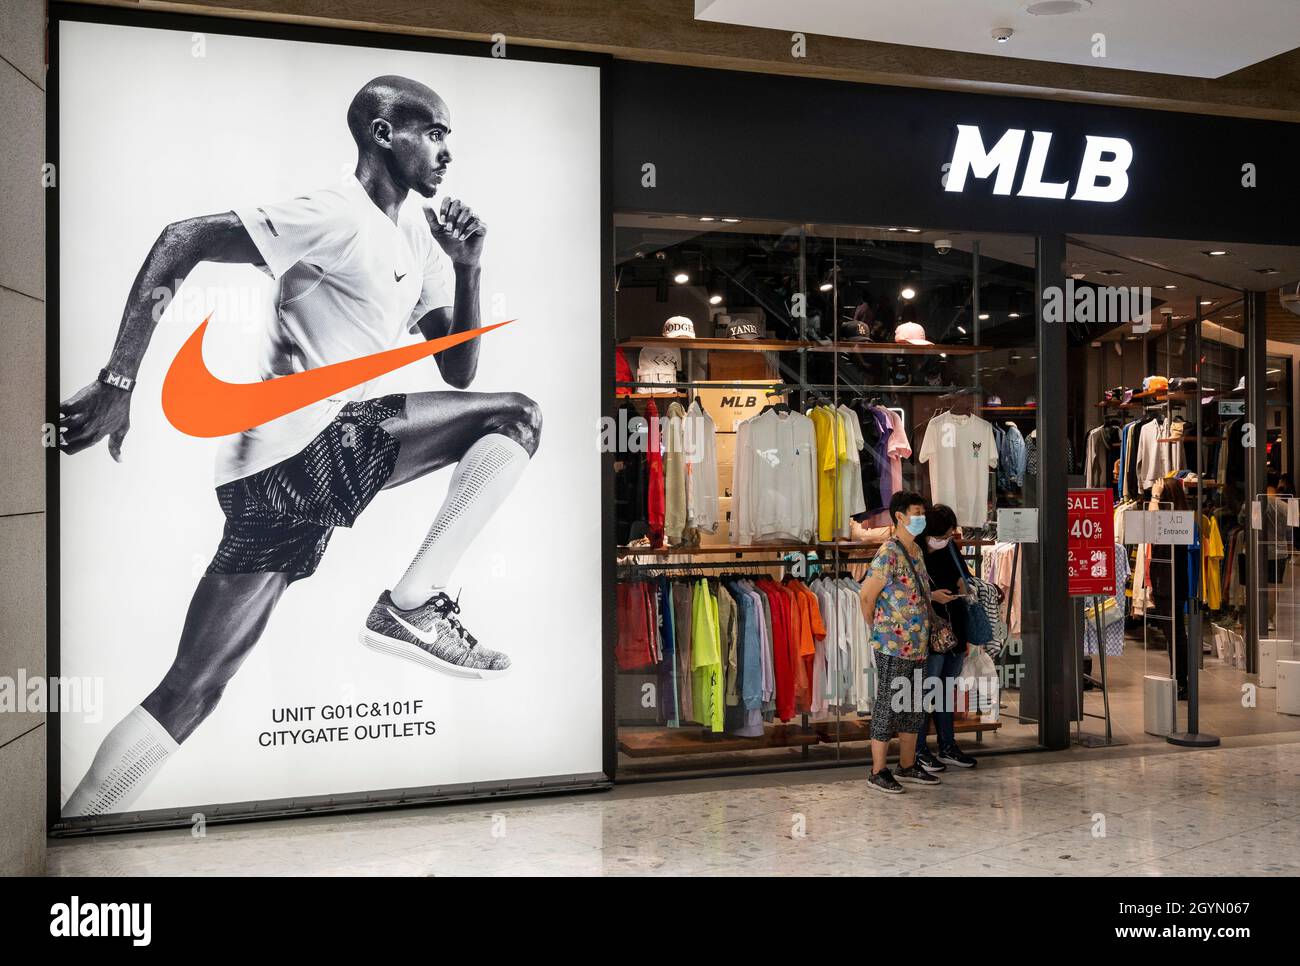 La marca de ropa deportiva multinacional americana Nike y la organización  profesional de béisbol, las tiendas de las Grandes Ligas de Béisbol (MLB)  en Hong Kong. (Foto de Budrul Chukrut / SOPA